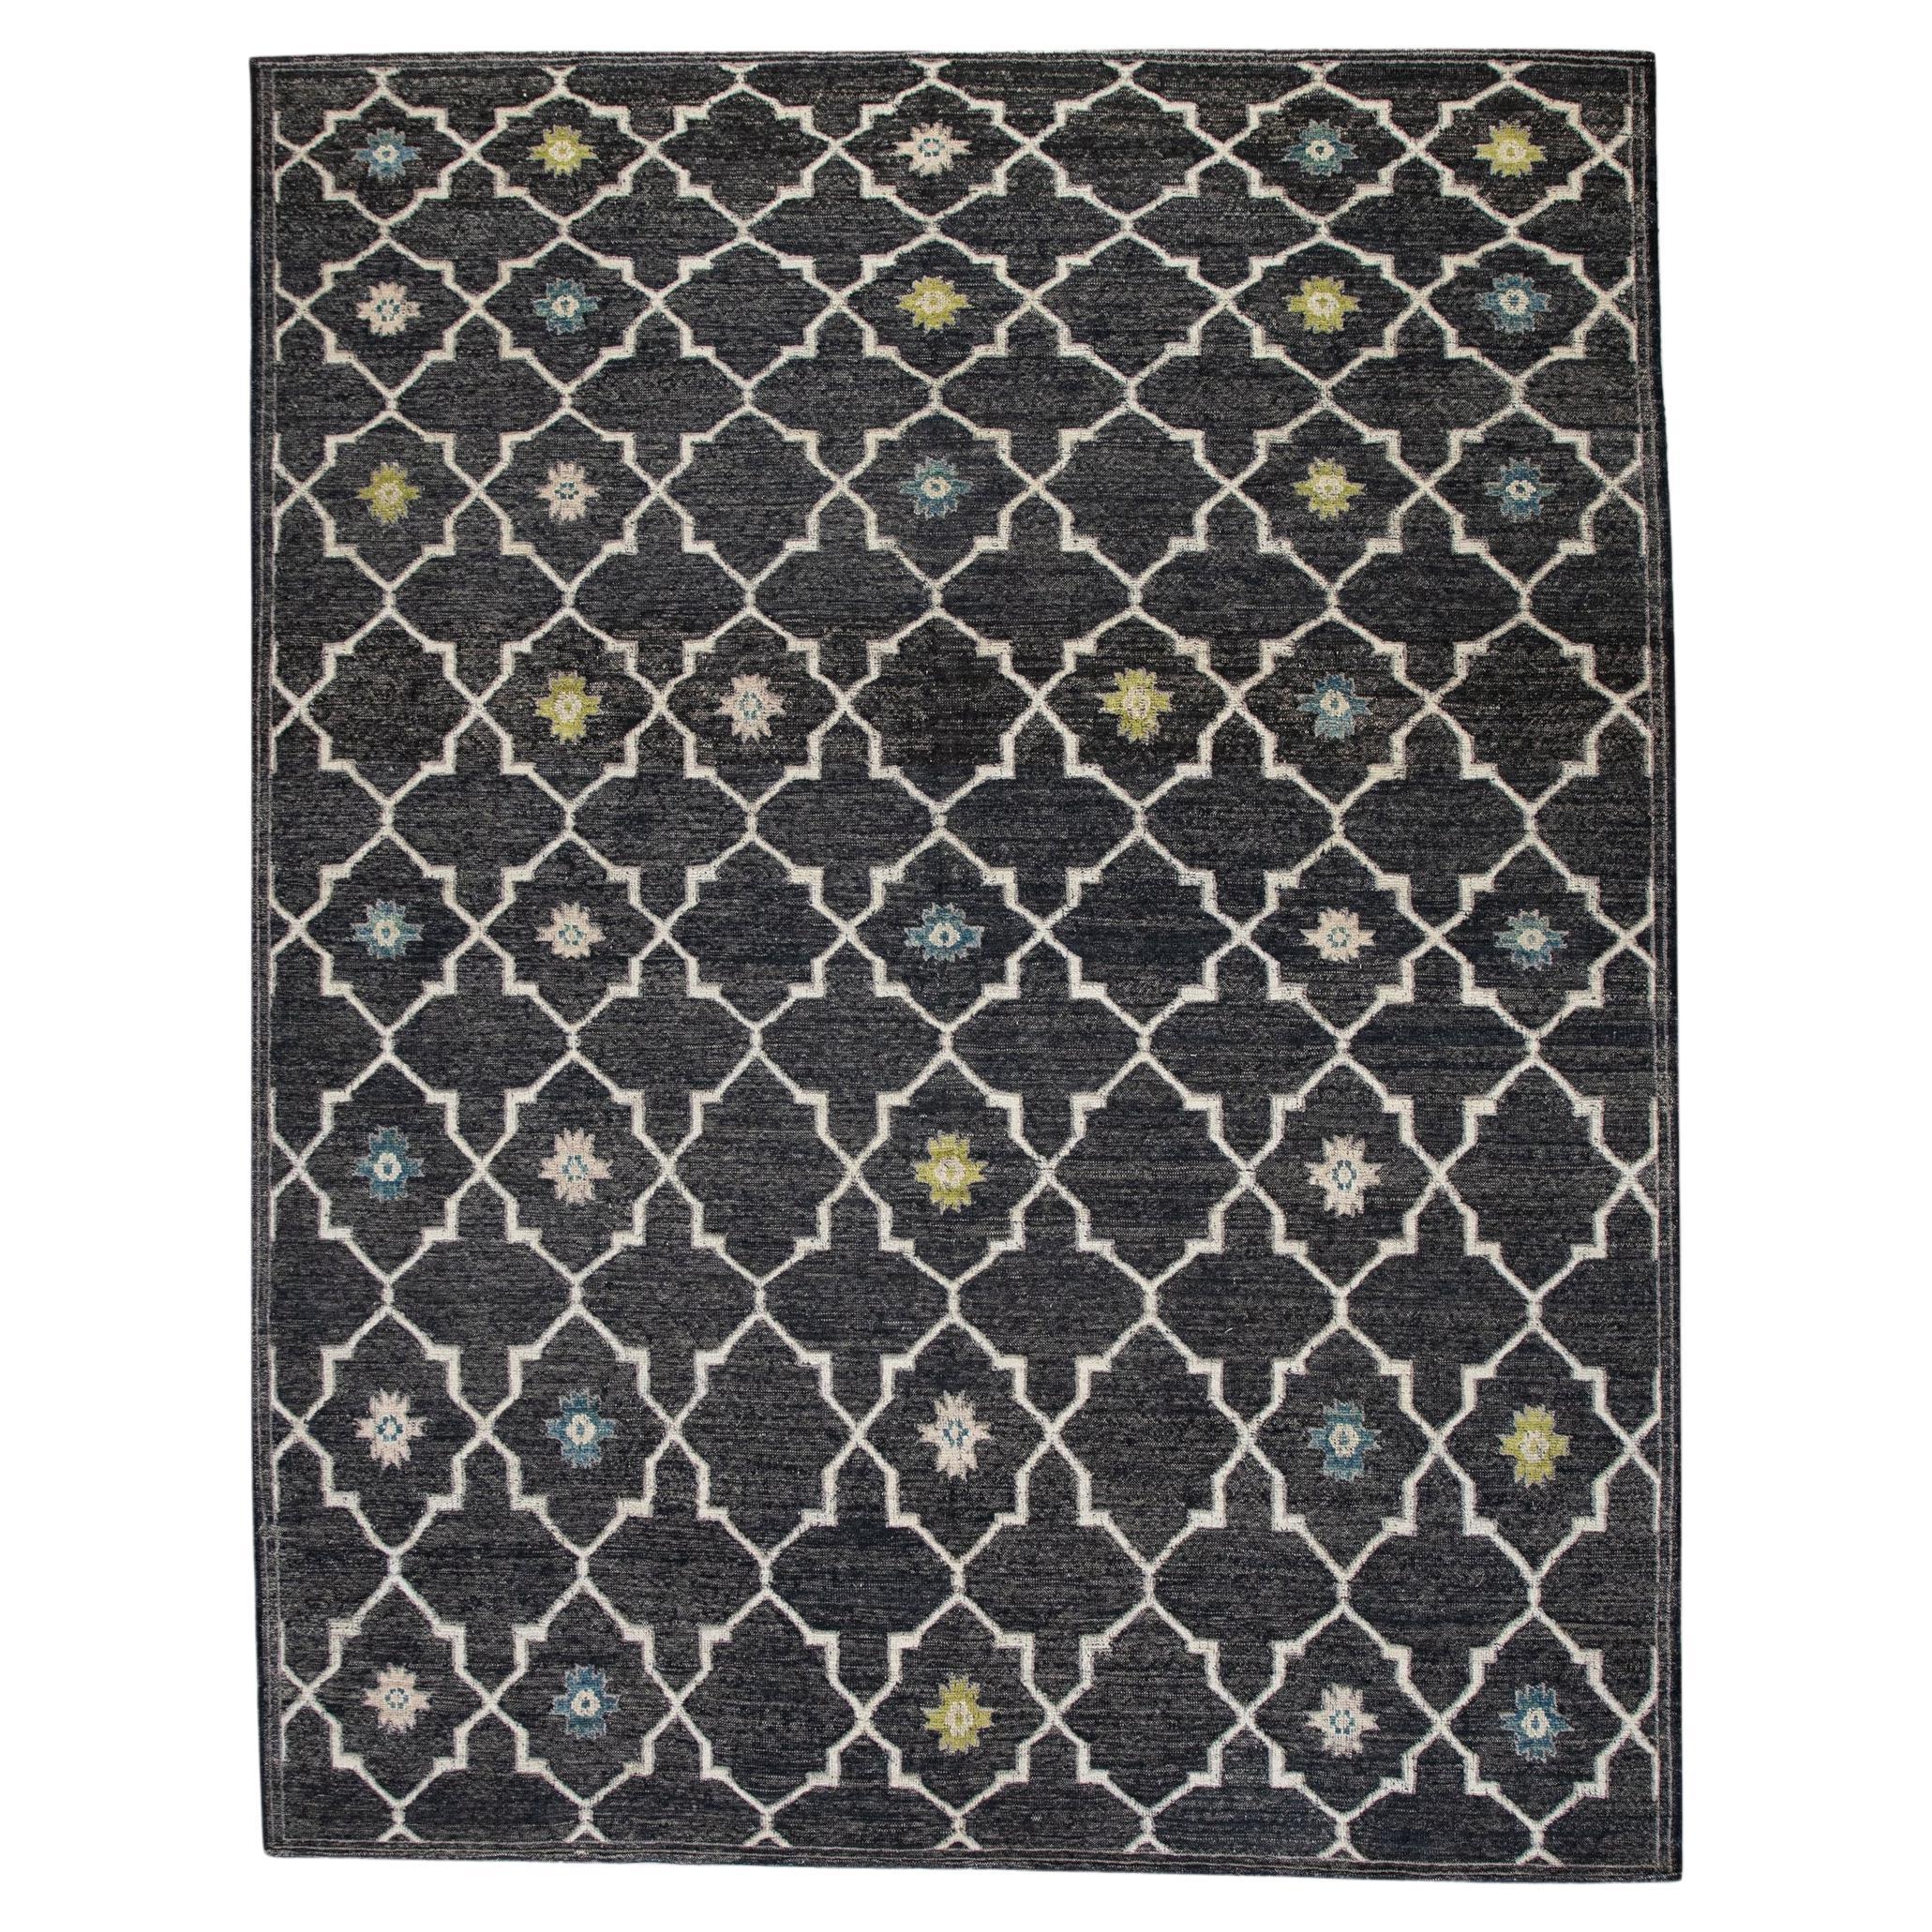 Charcoal Flatweave Handmade Wool Rug in Blue & Green Geometric Design 10' X 12'4 For Sale